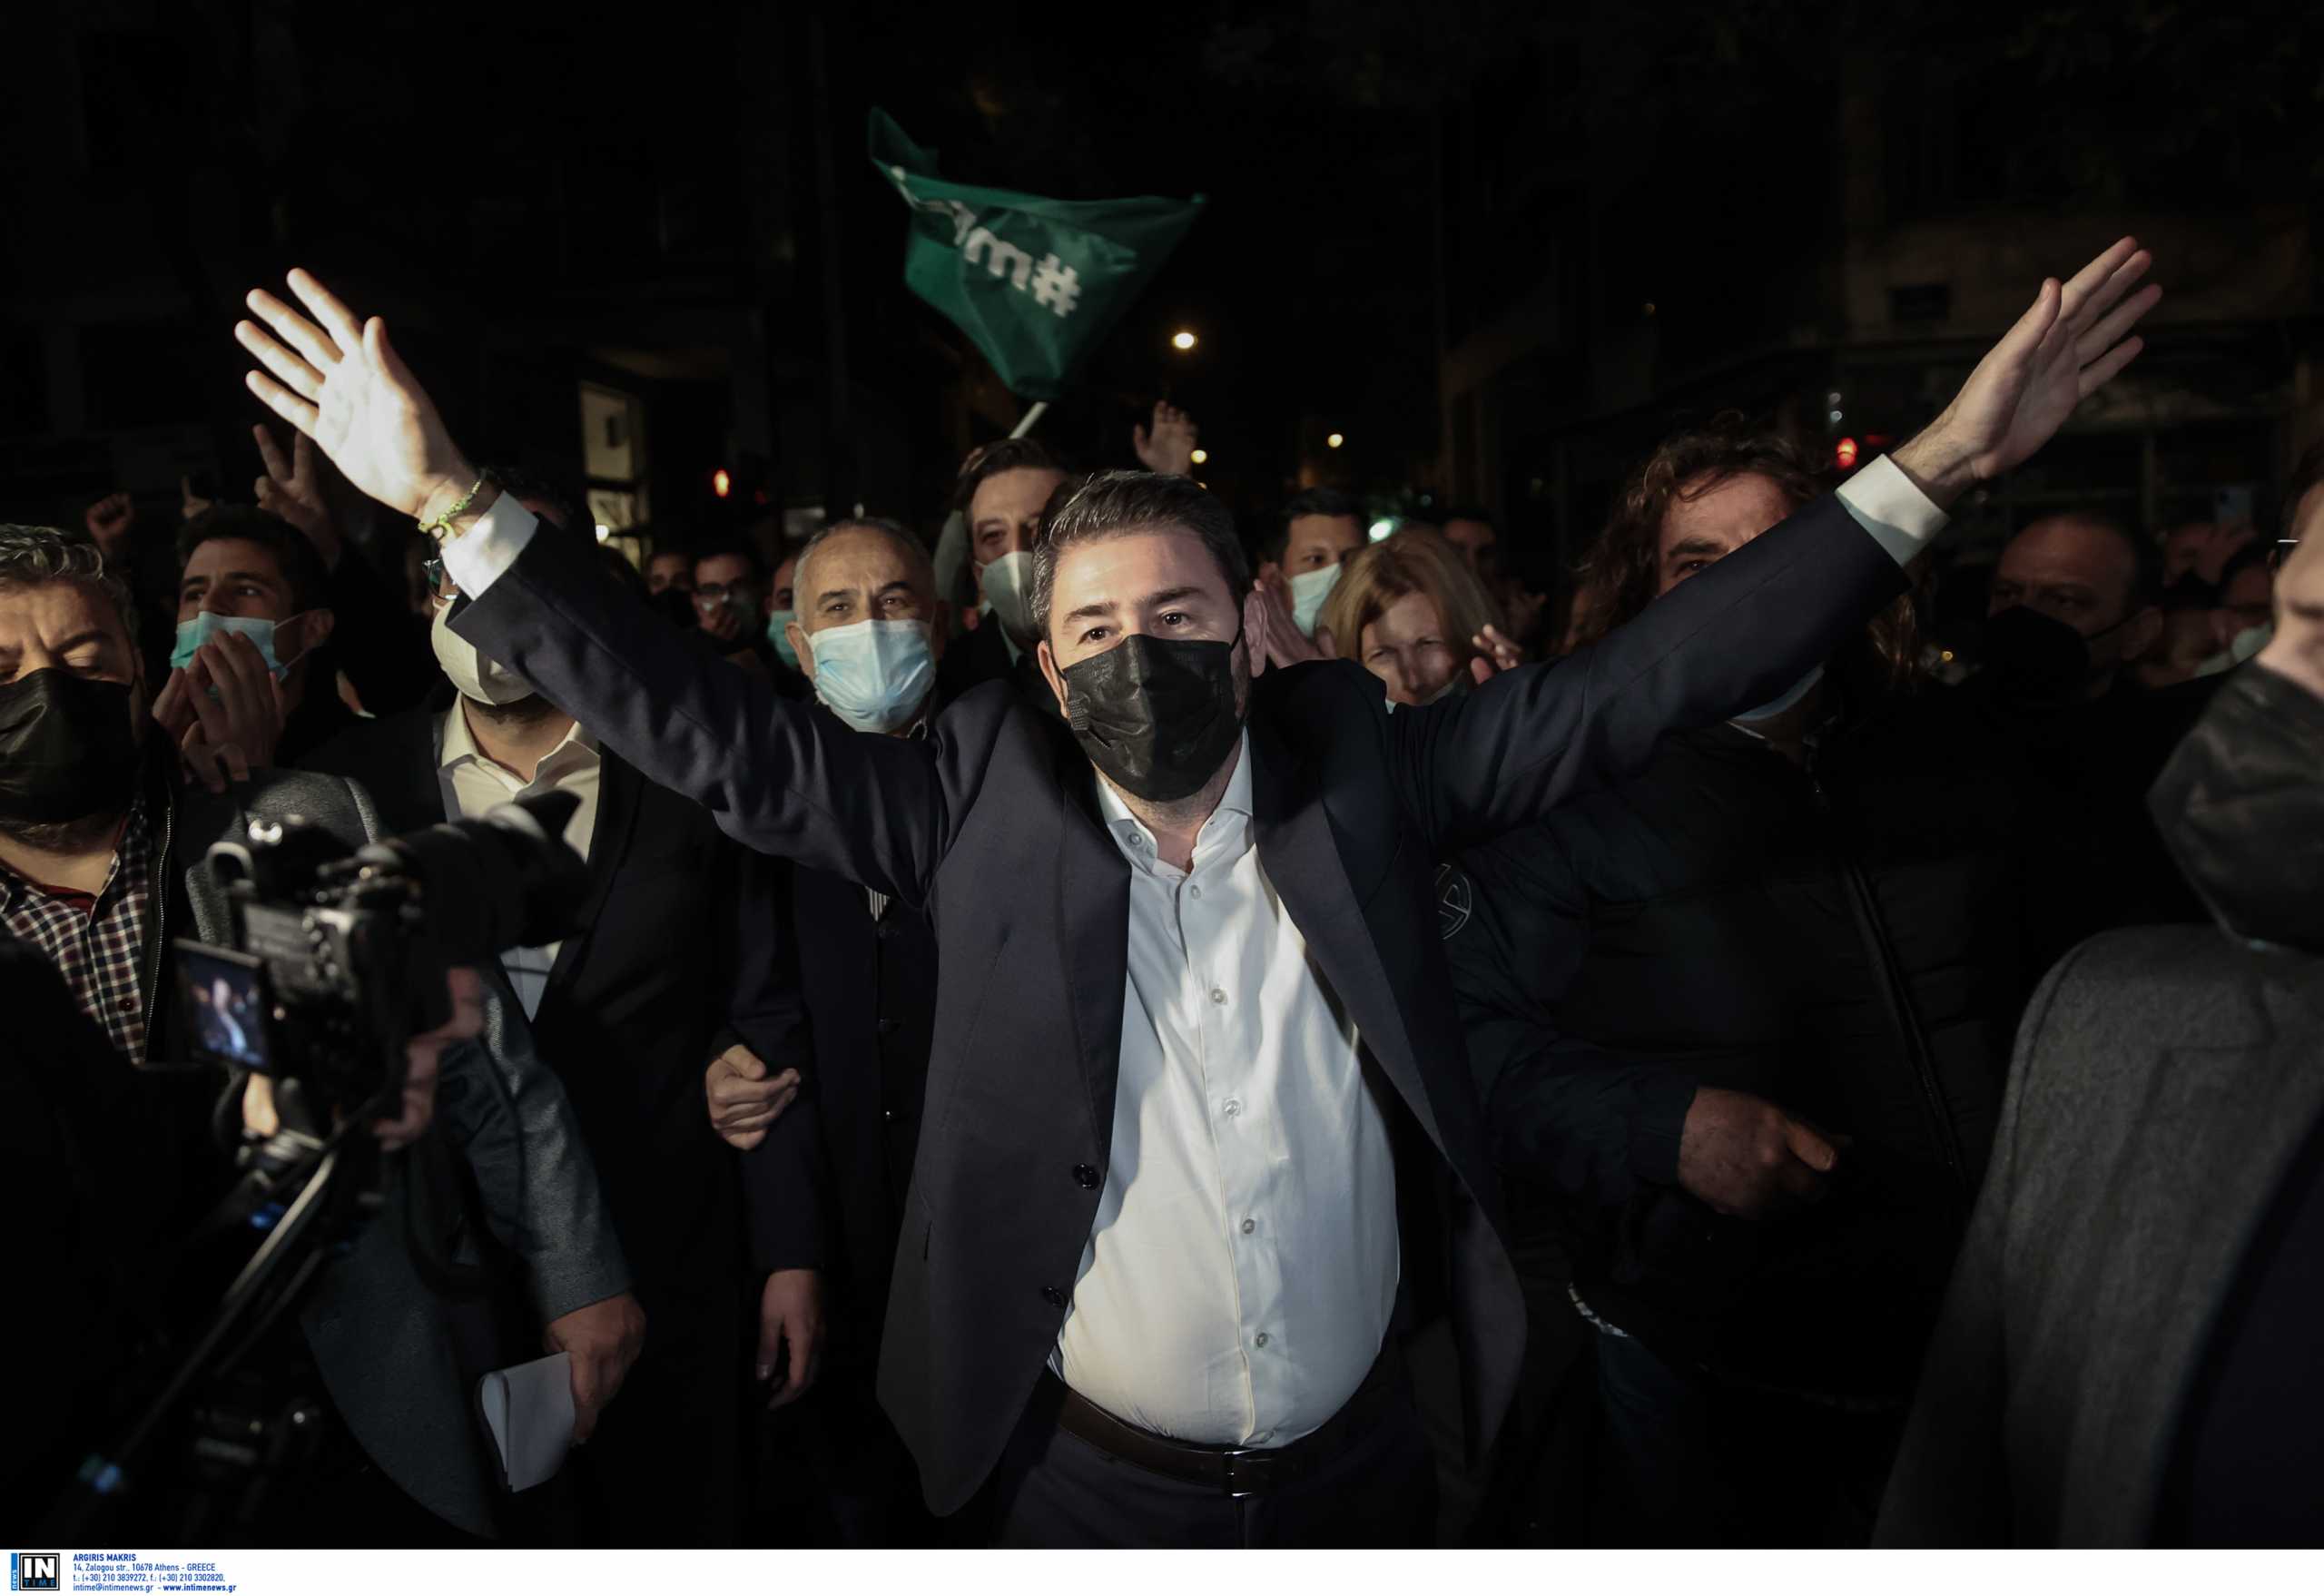 Εκλογές ΚΙΝΑΛ: Ο Νίκος Ανδρουλάκης θέλει επιστροφή στο ΠΑΣΟΚ αλλά… μπορεί; Οι πιθανότητες για το όνομα